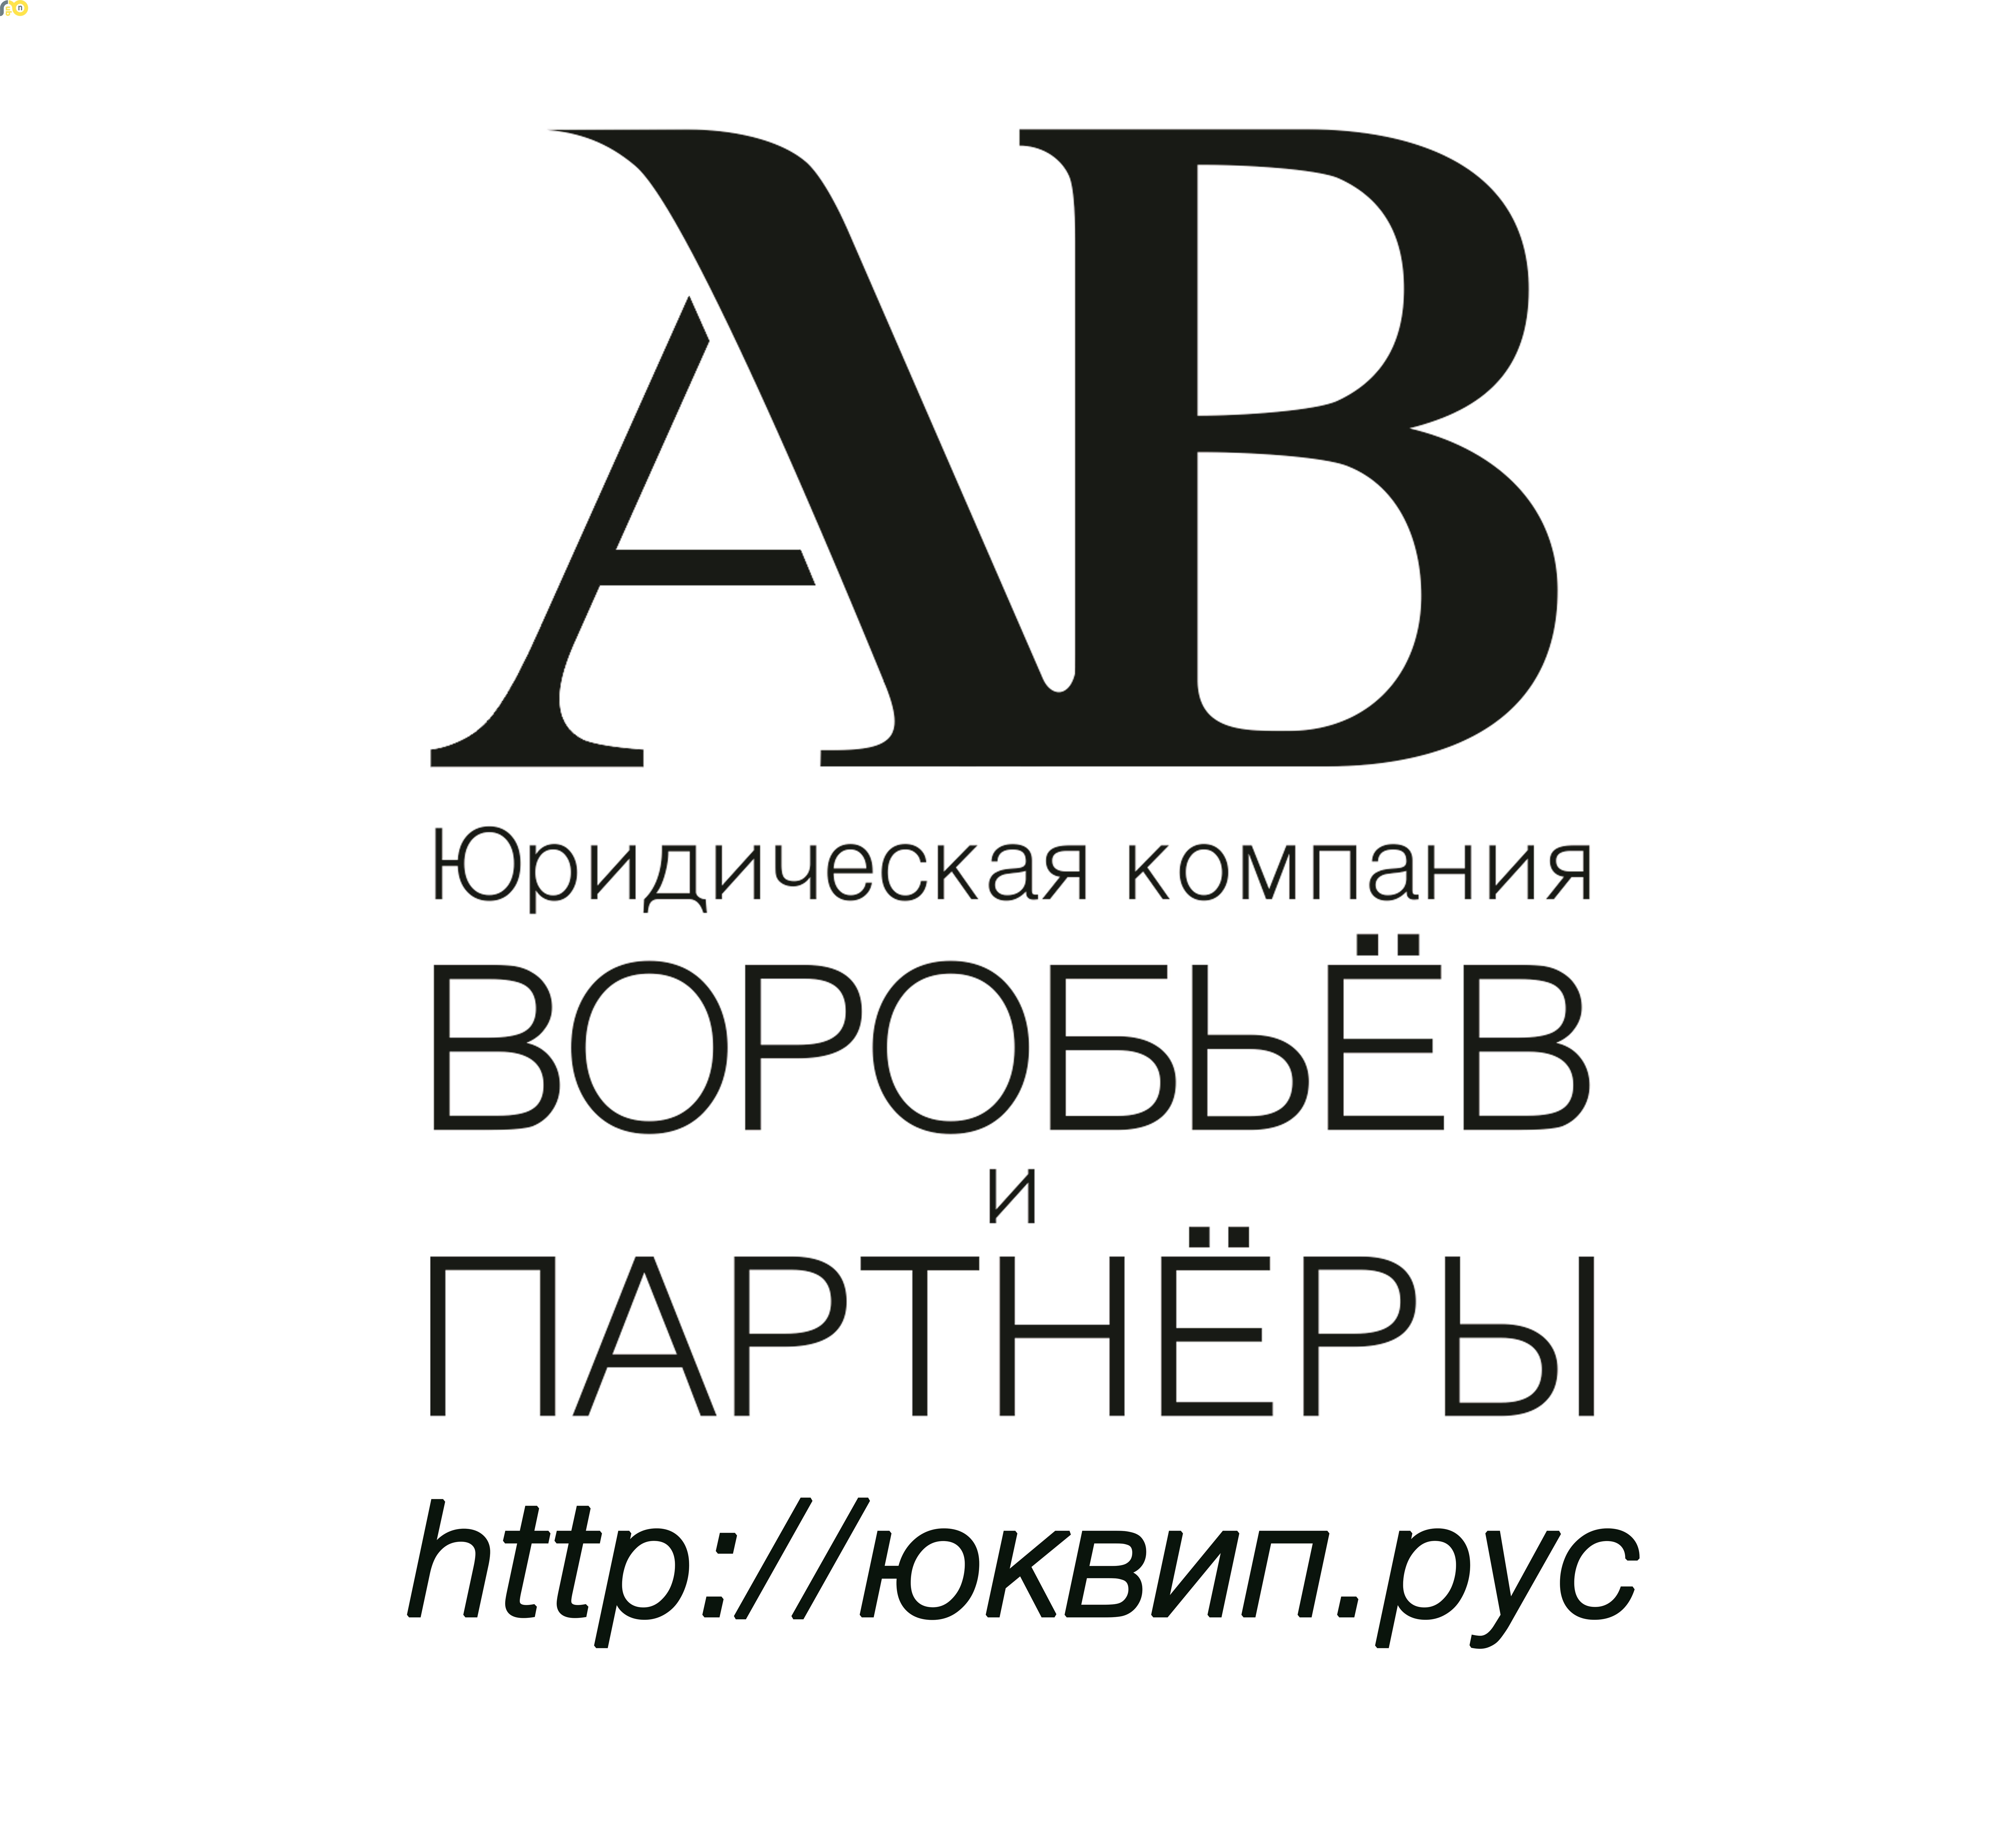 Составление иска о признании факта нахождения в Донецке на 7 апреля 14